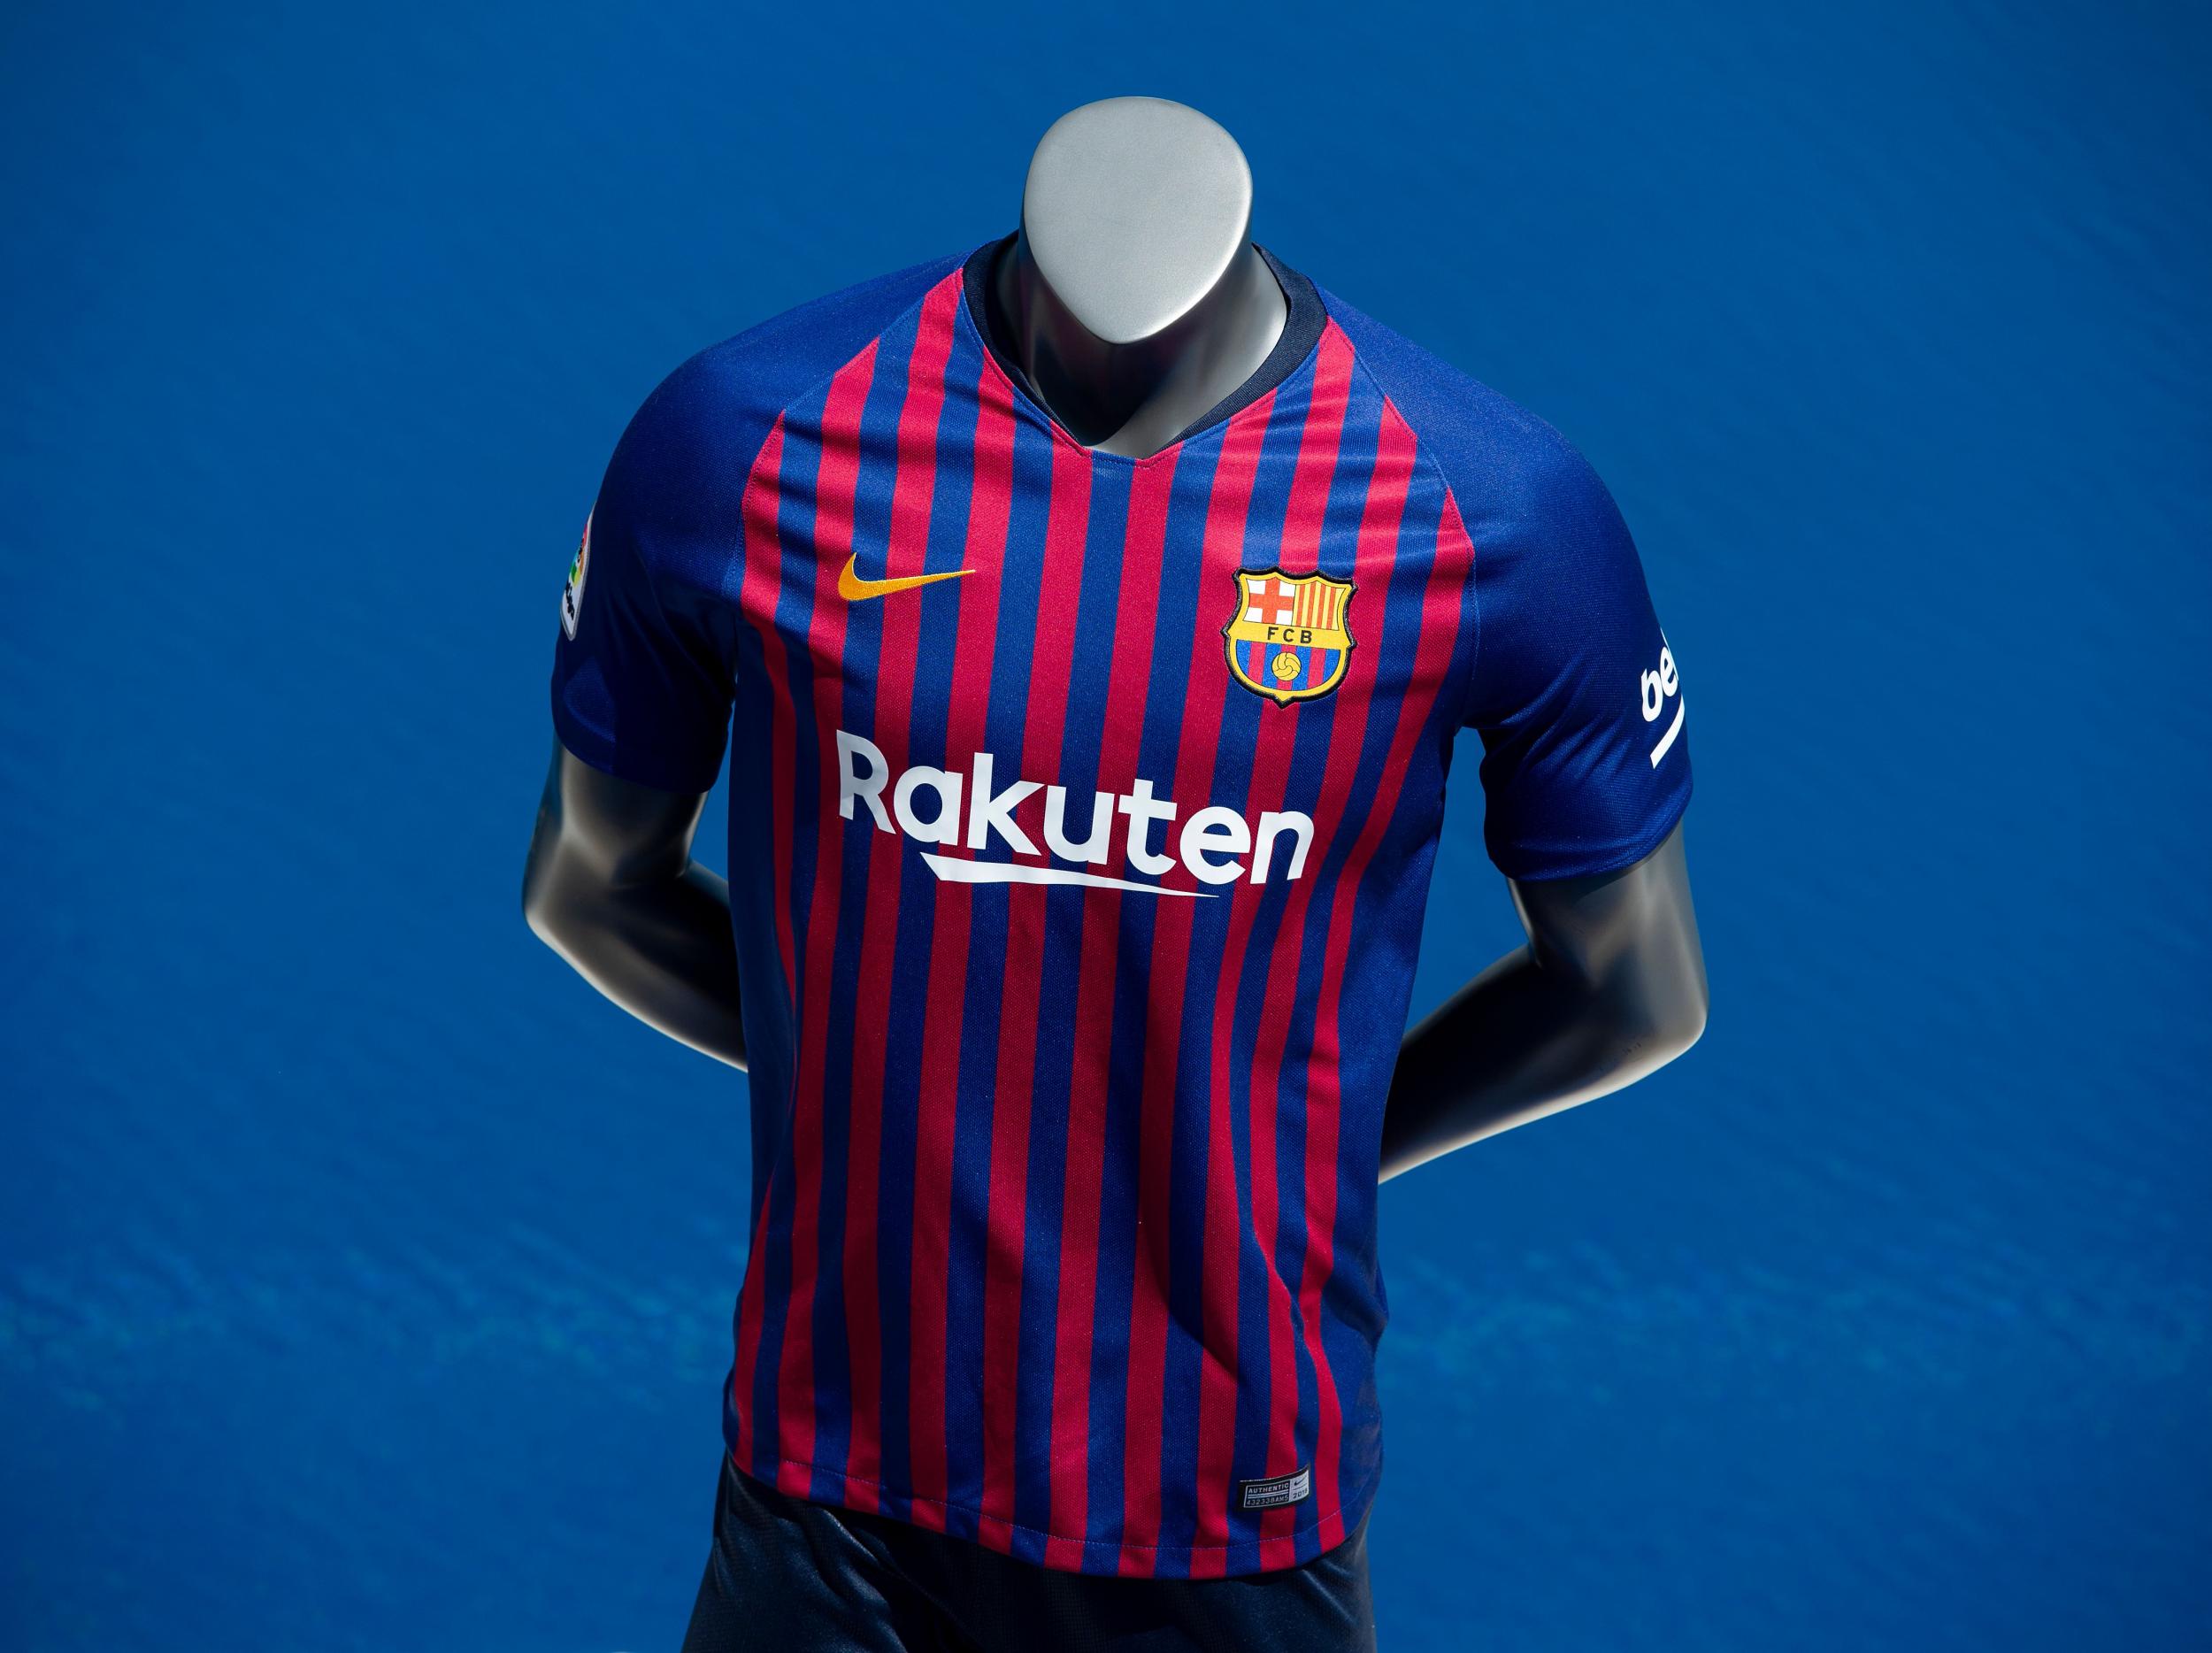 best barcelona jerseys